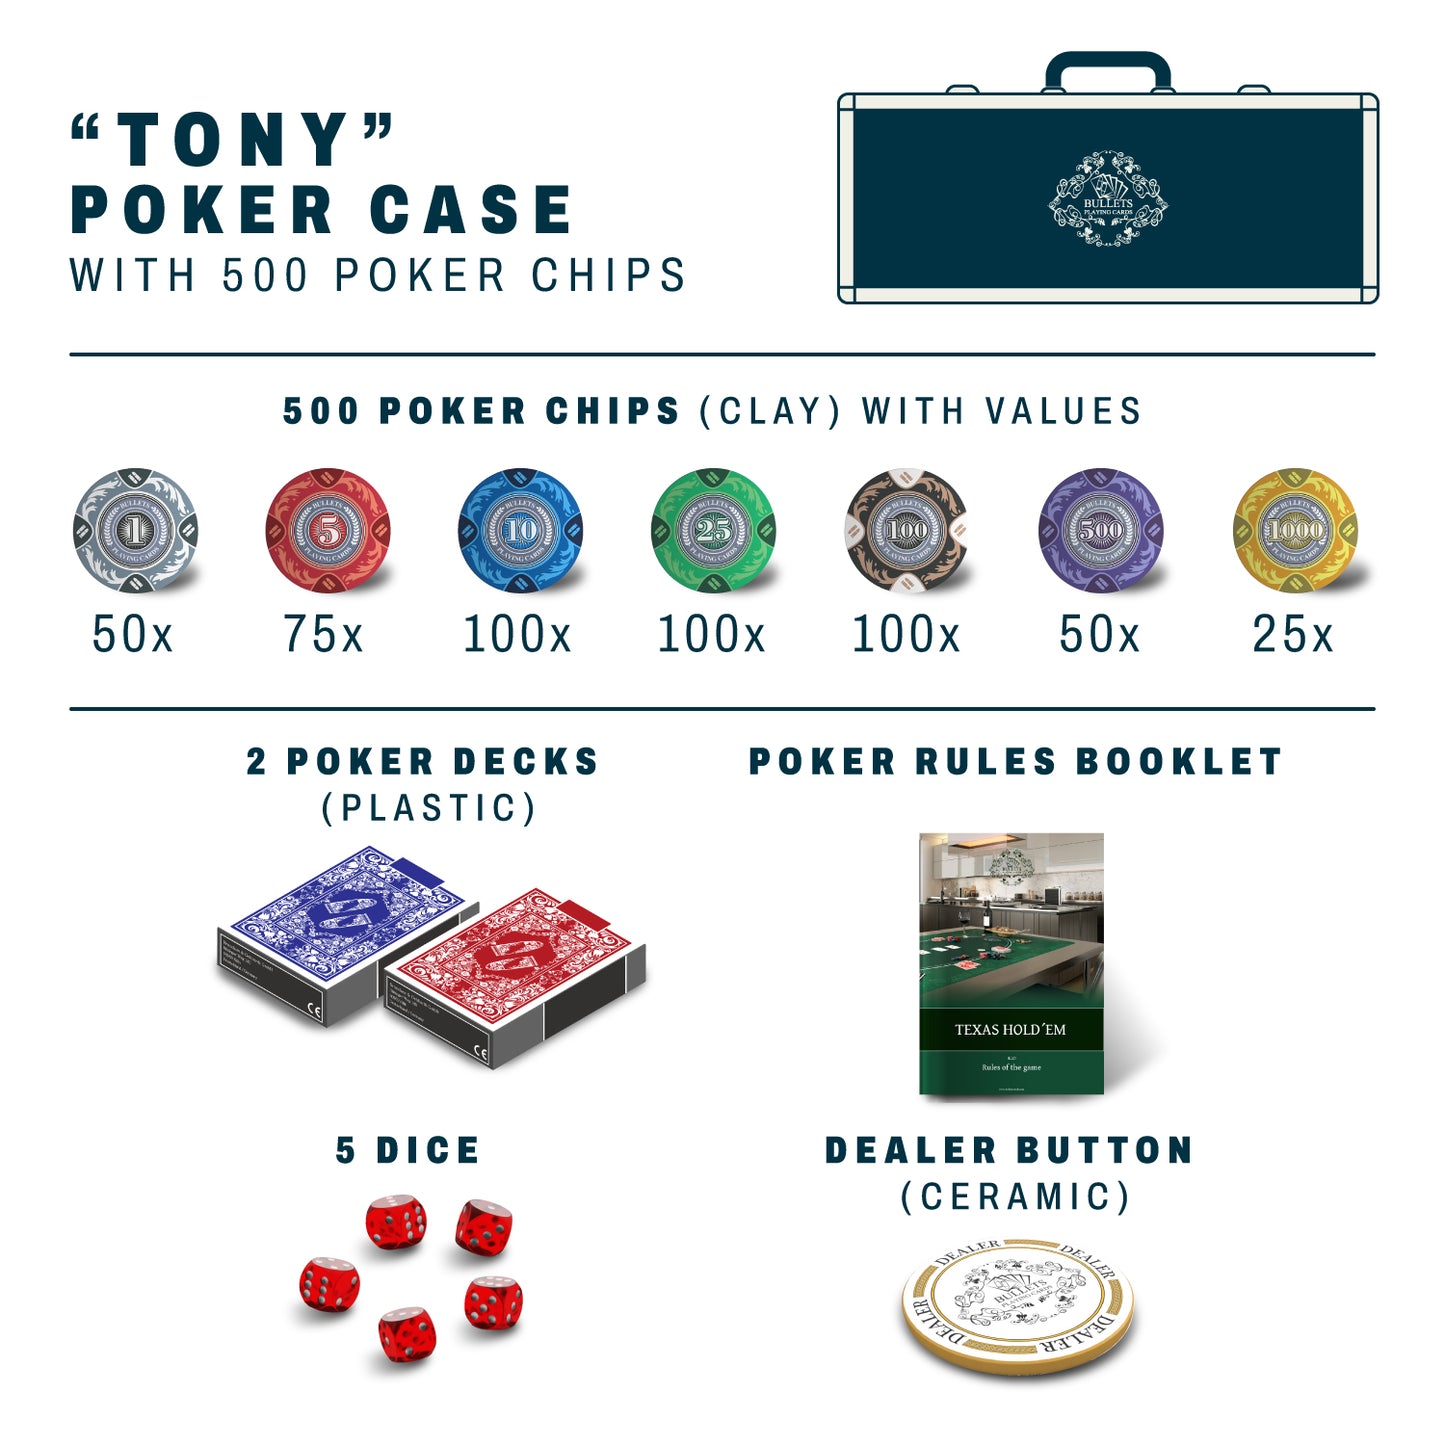 Estuche de poker con 500 fichas de poker de arcilla de diseño "Tony" con valores